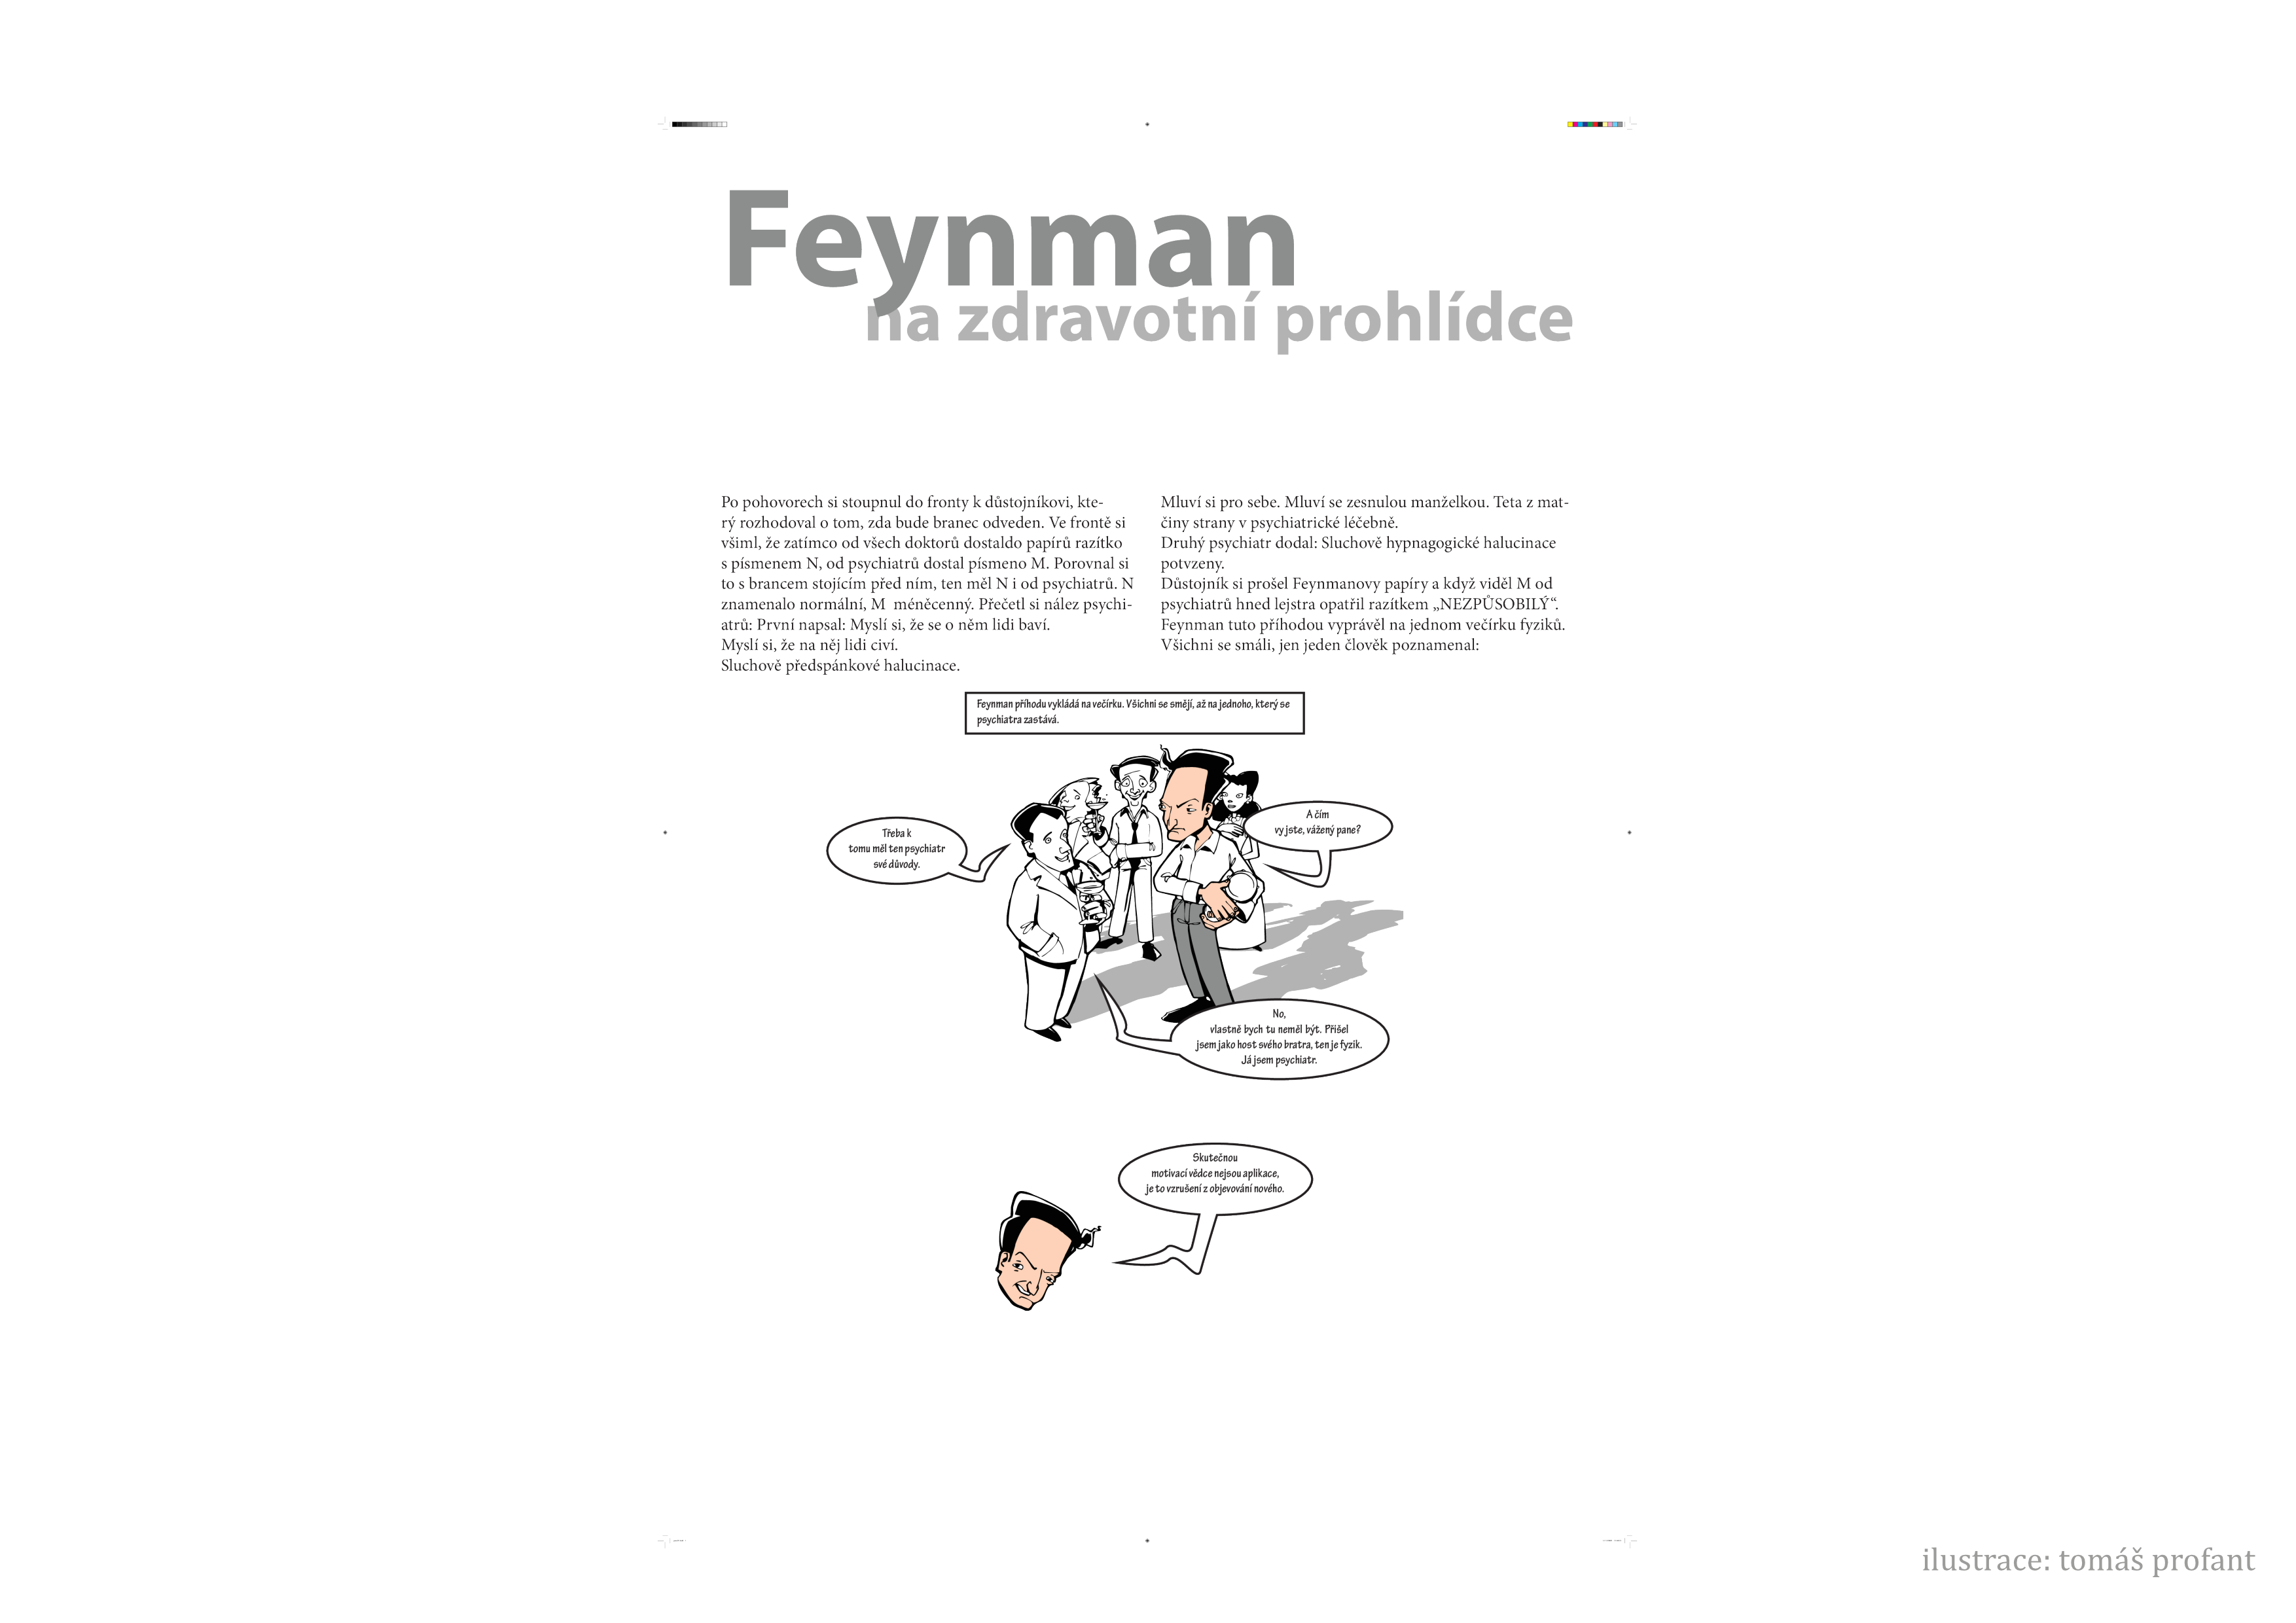 _images/feynman-str%C3%A1nka009.png